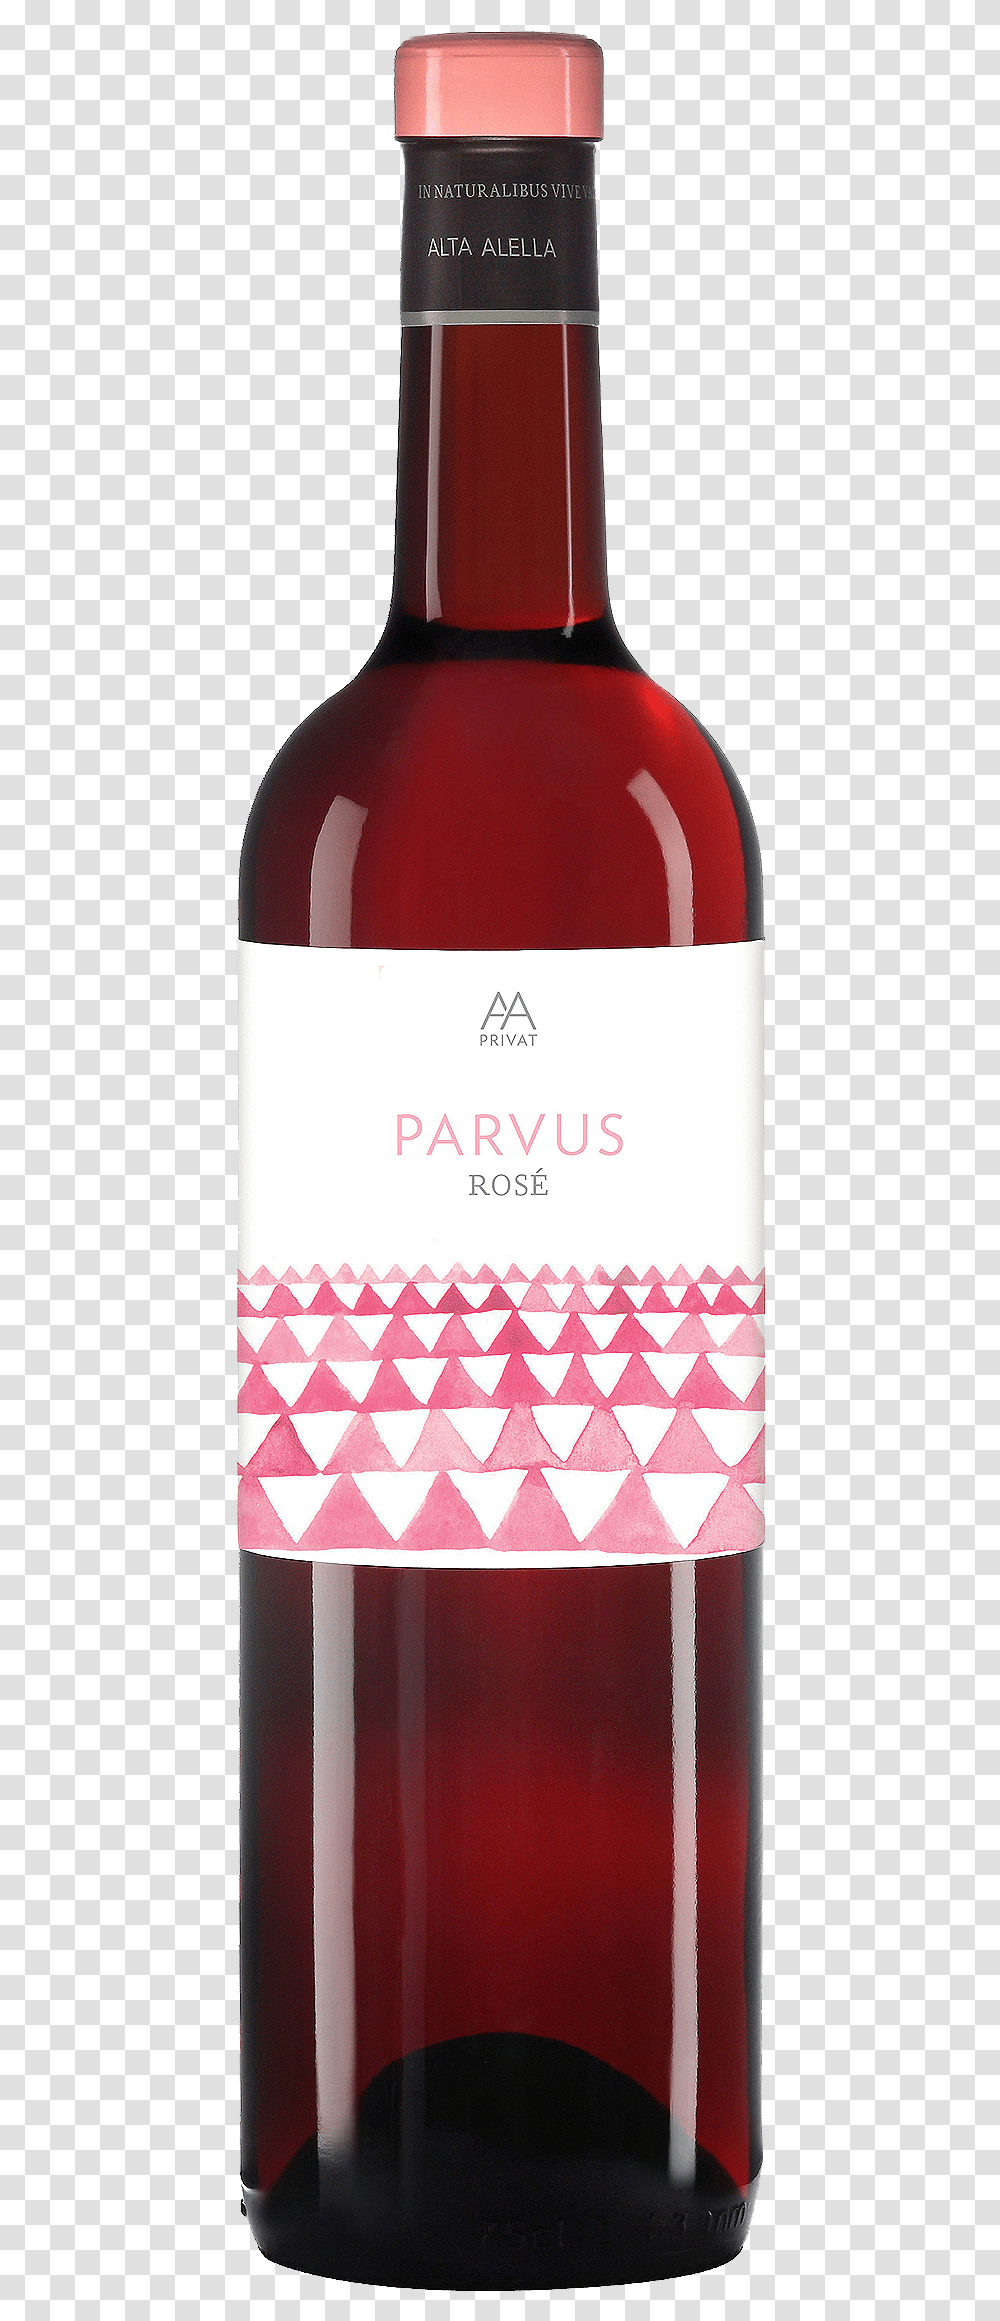 Aa Parvus Rose Wine Bottle, Alcohol, Beverage, Drink Transparent Png